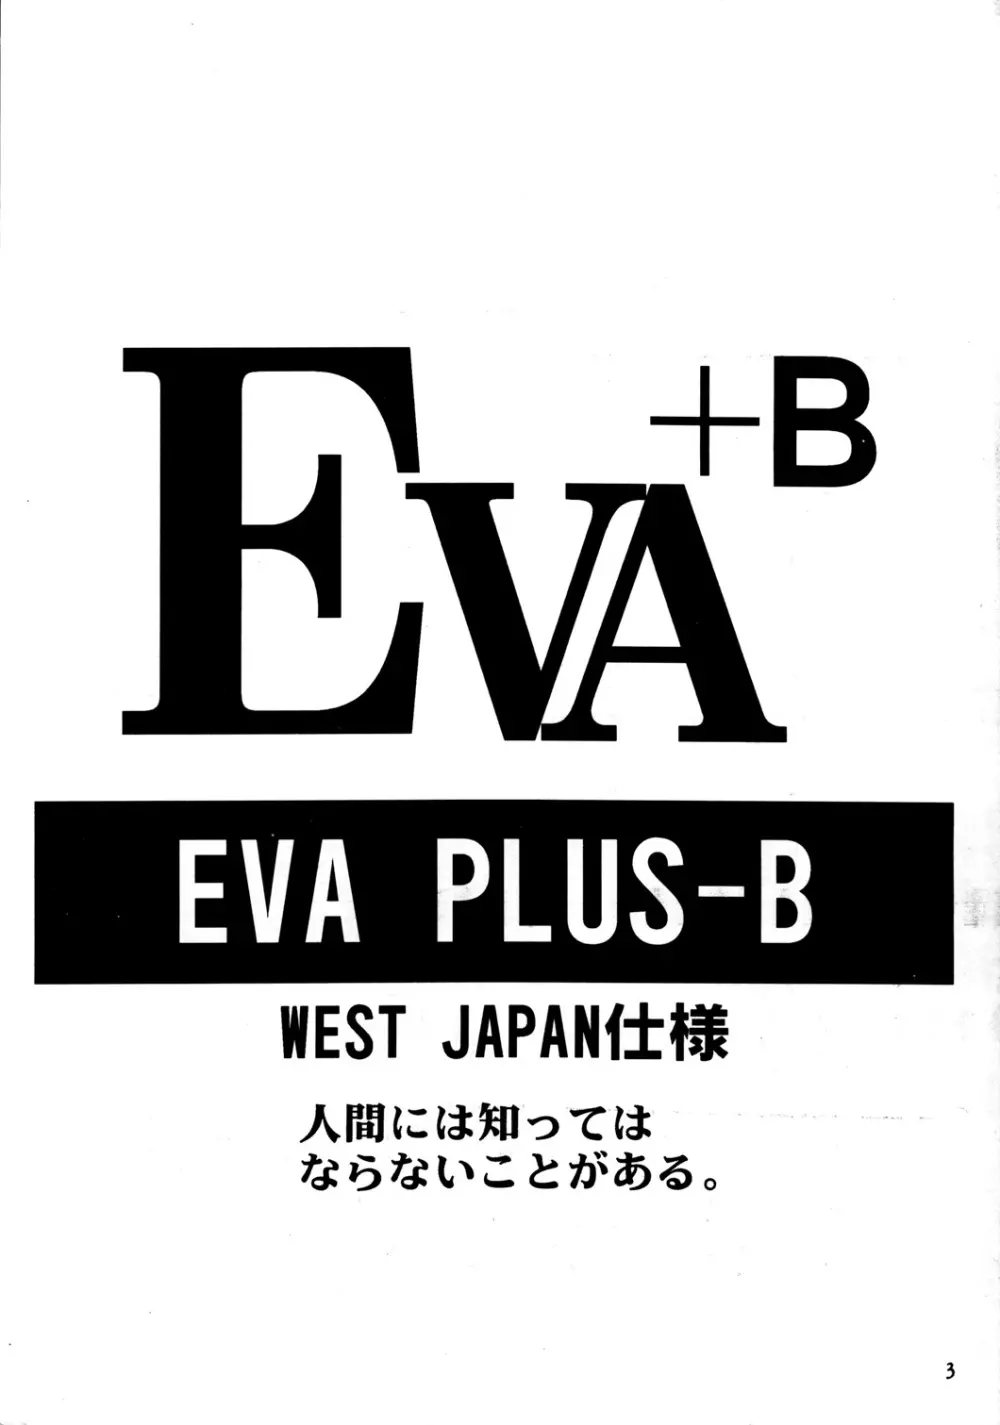 EVA PLUS B WEST JAPAN 仕様 2ページ